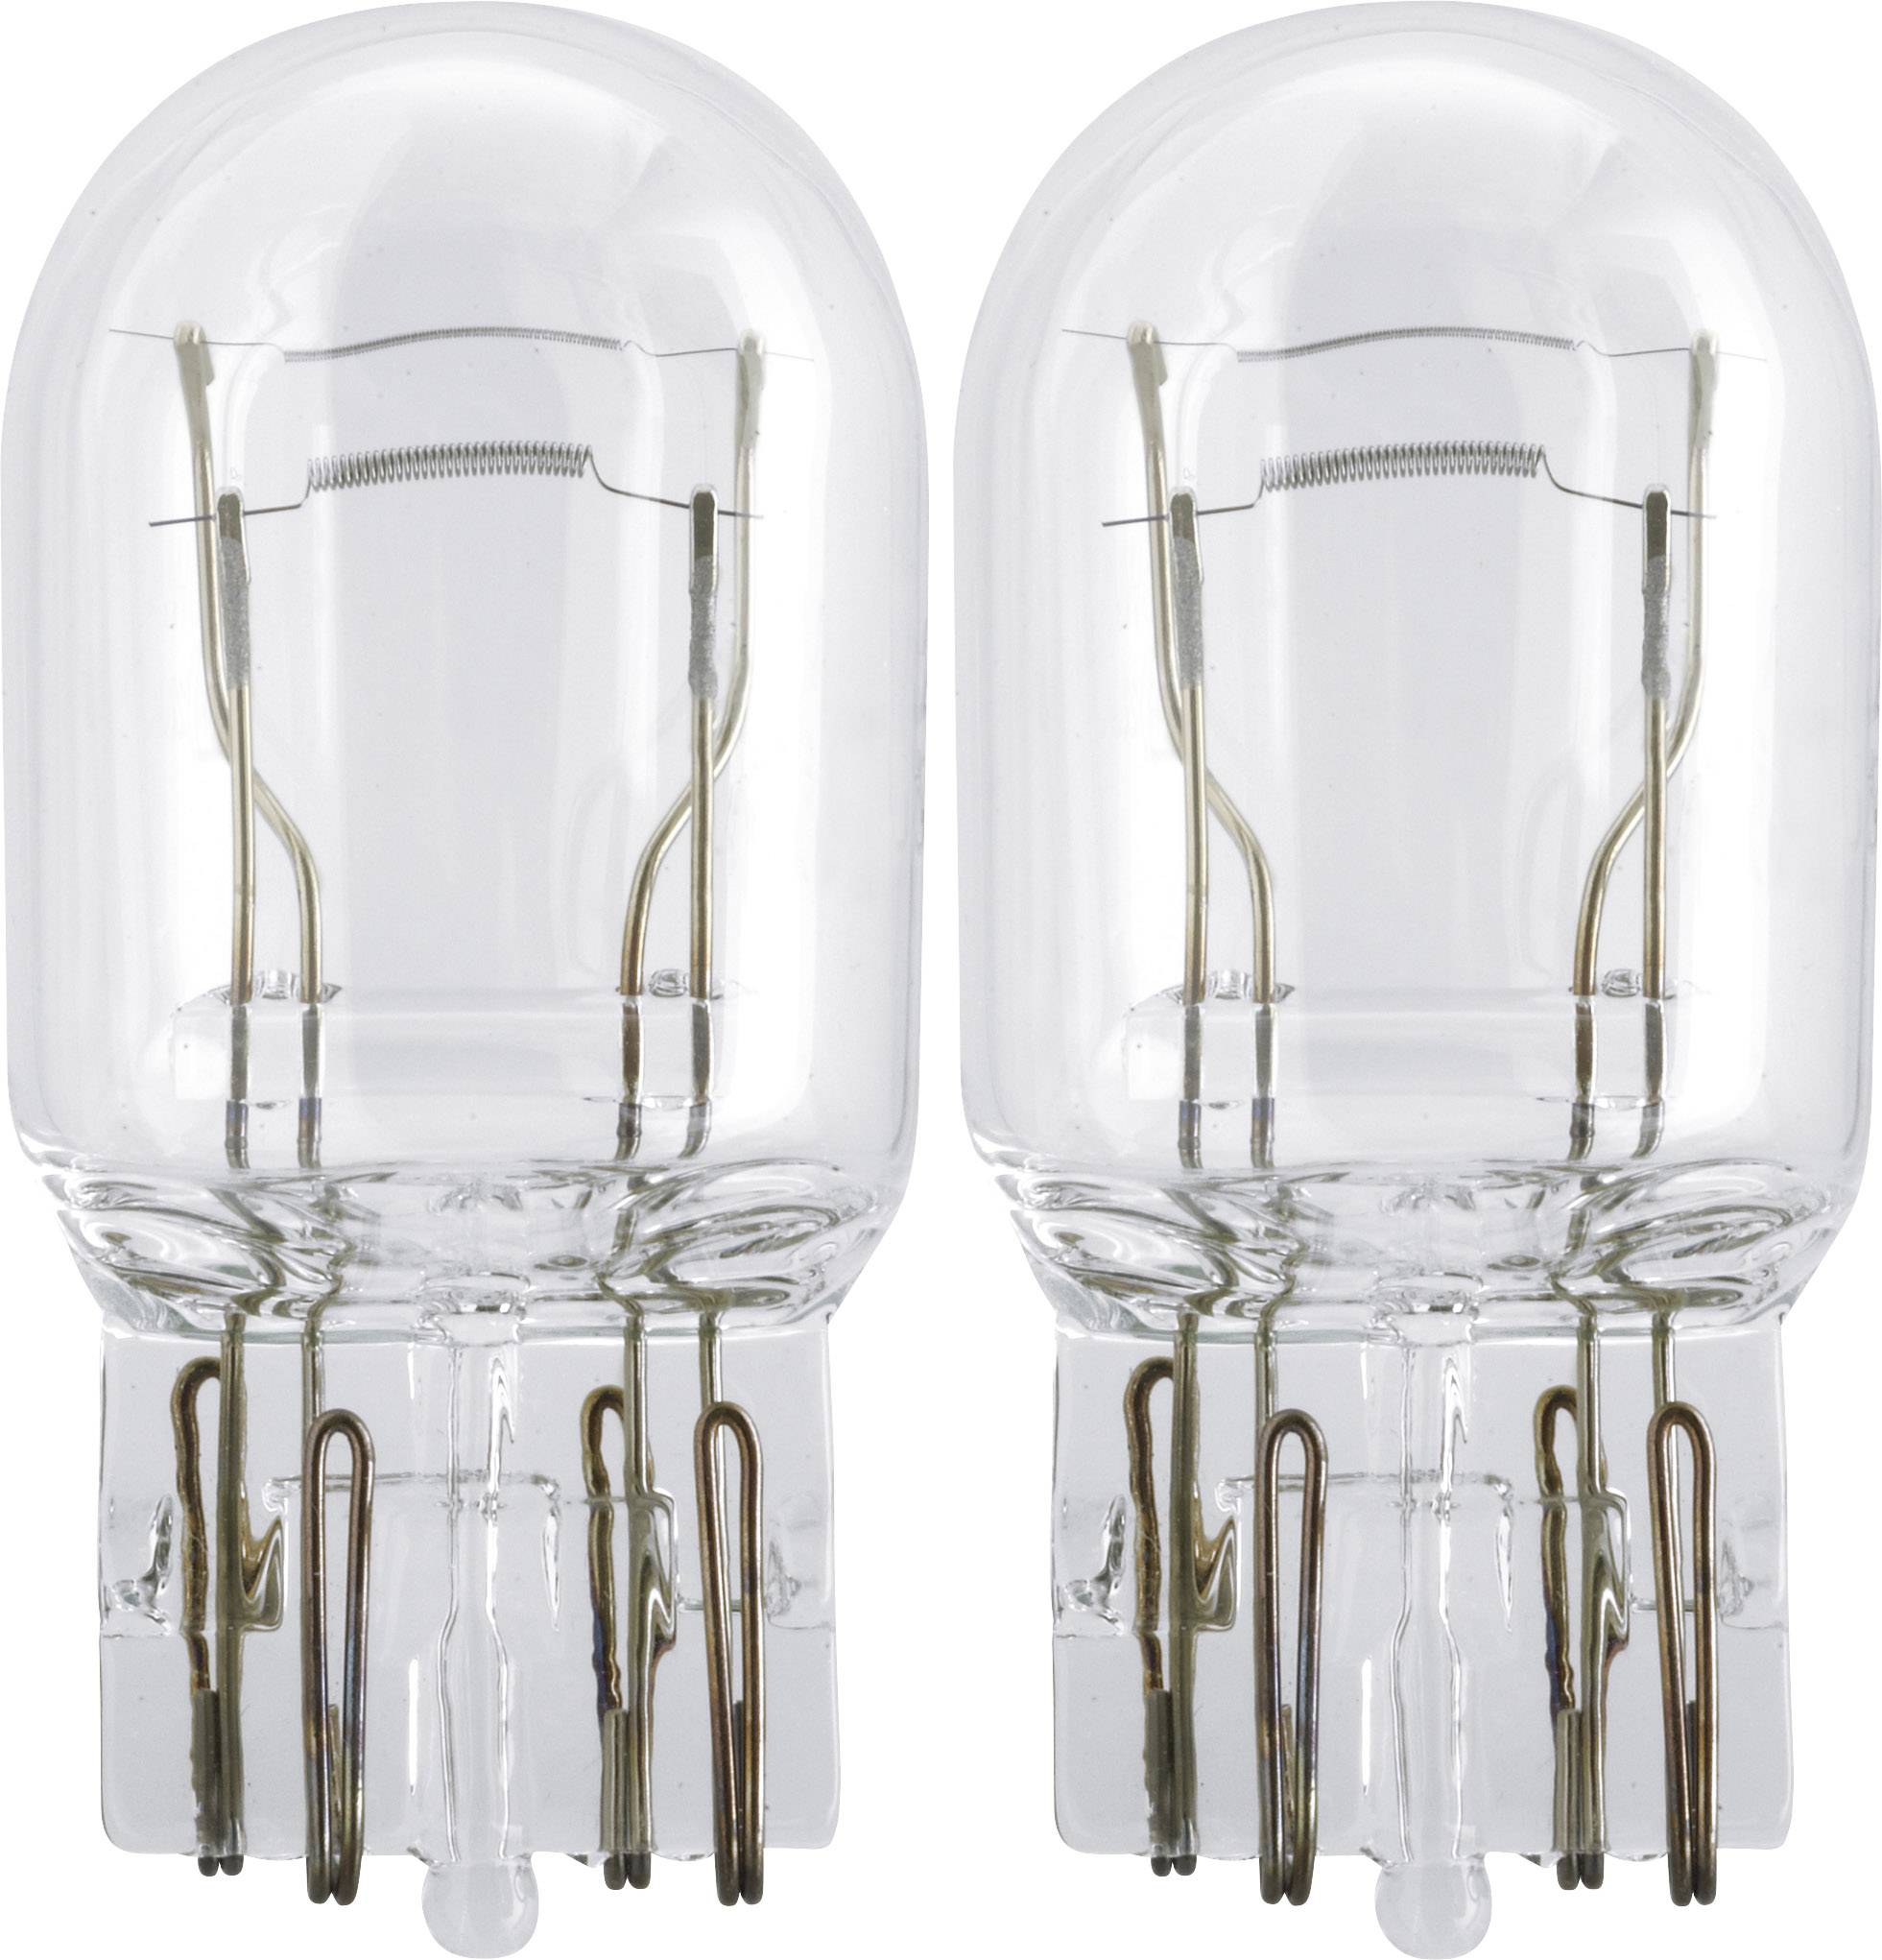 Ampoule PHILIPS 2 ✕ W21/5W Wedge Base - 69739130 au meilleur prix